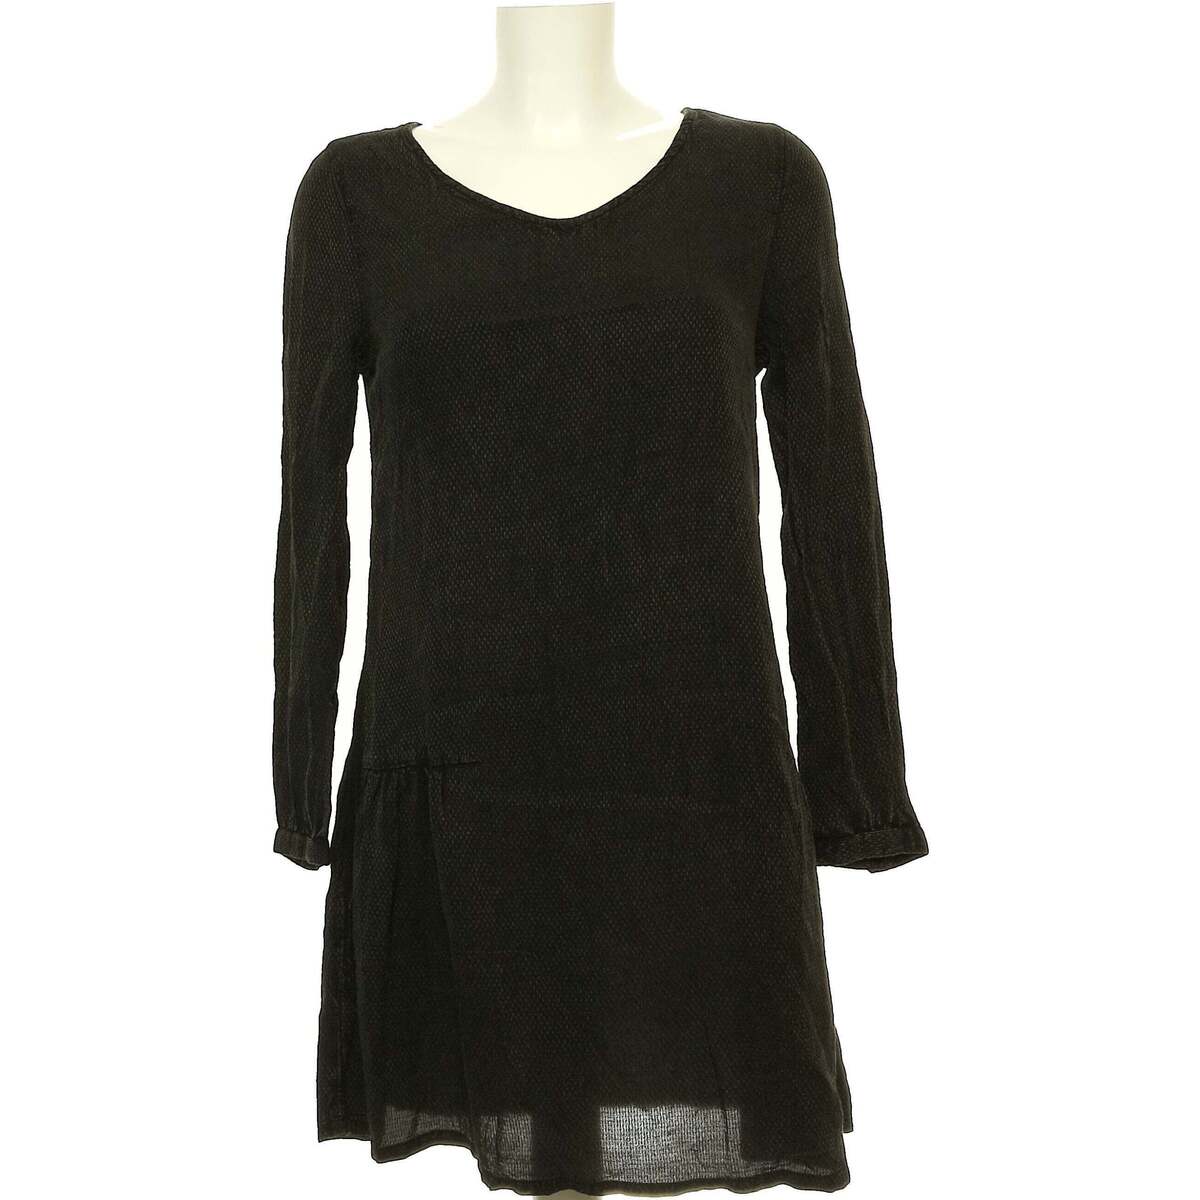 Vêtements Femme Robes courtes Teddy Smith robe courte  36 - T1 - S Noir Noir